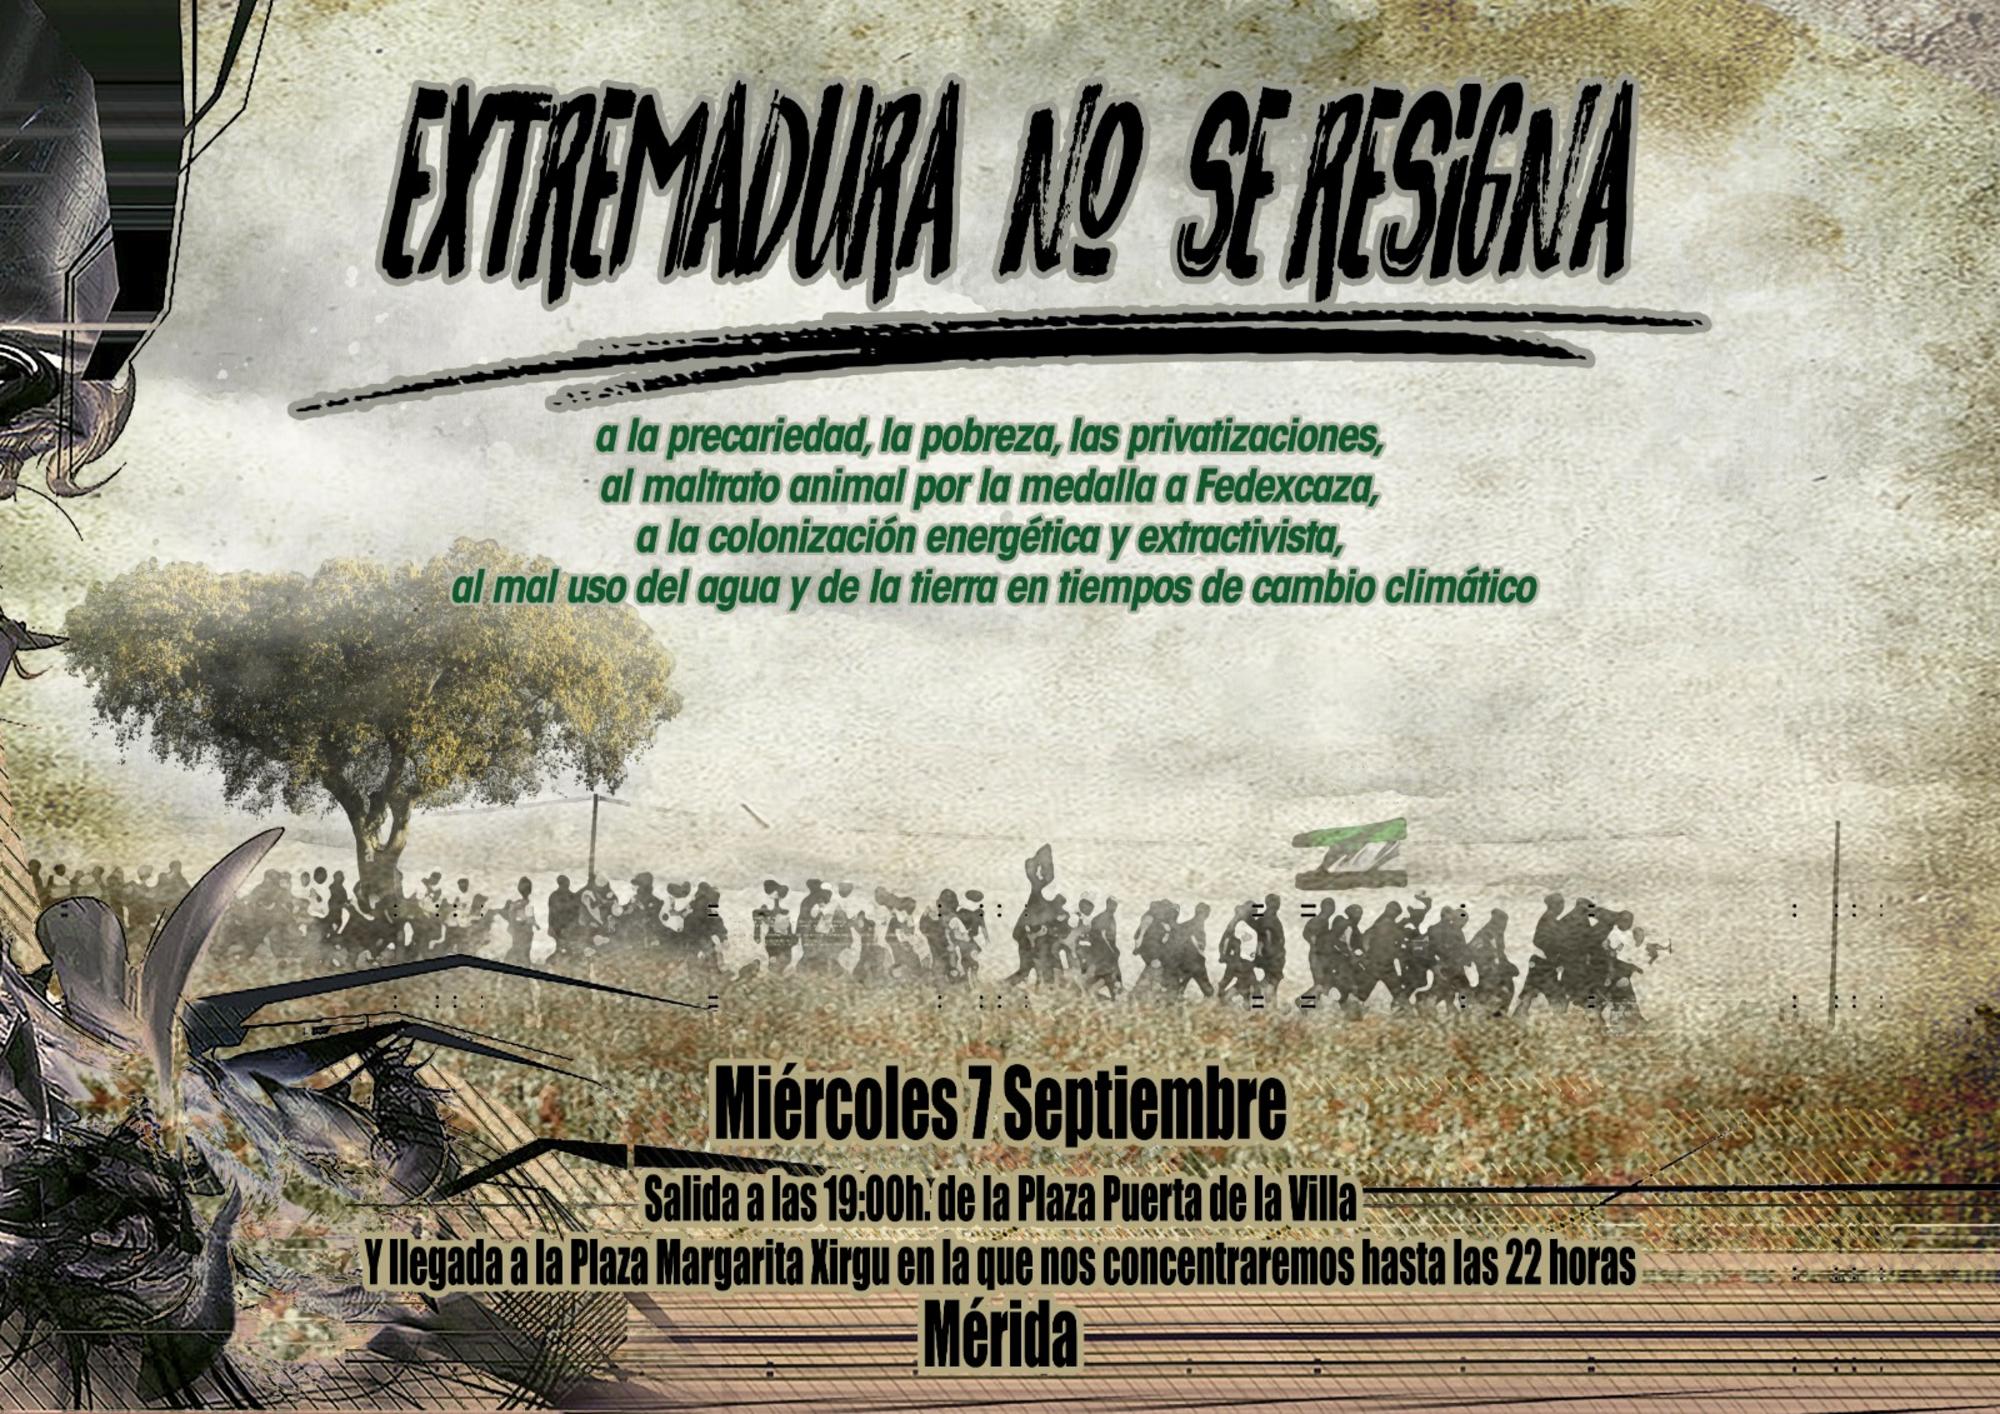 Extremadura no se resigna